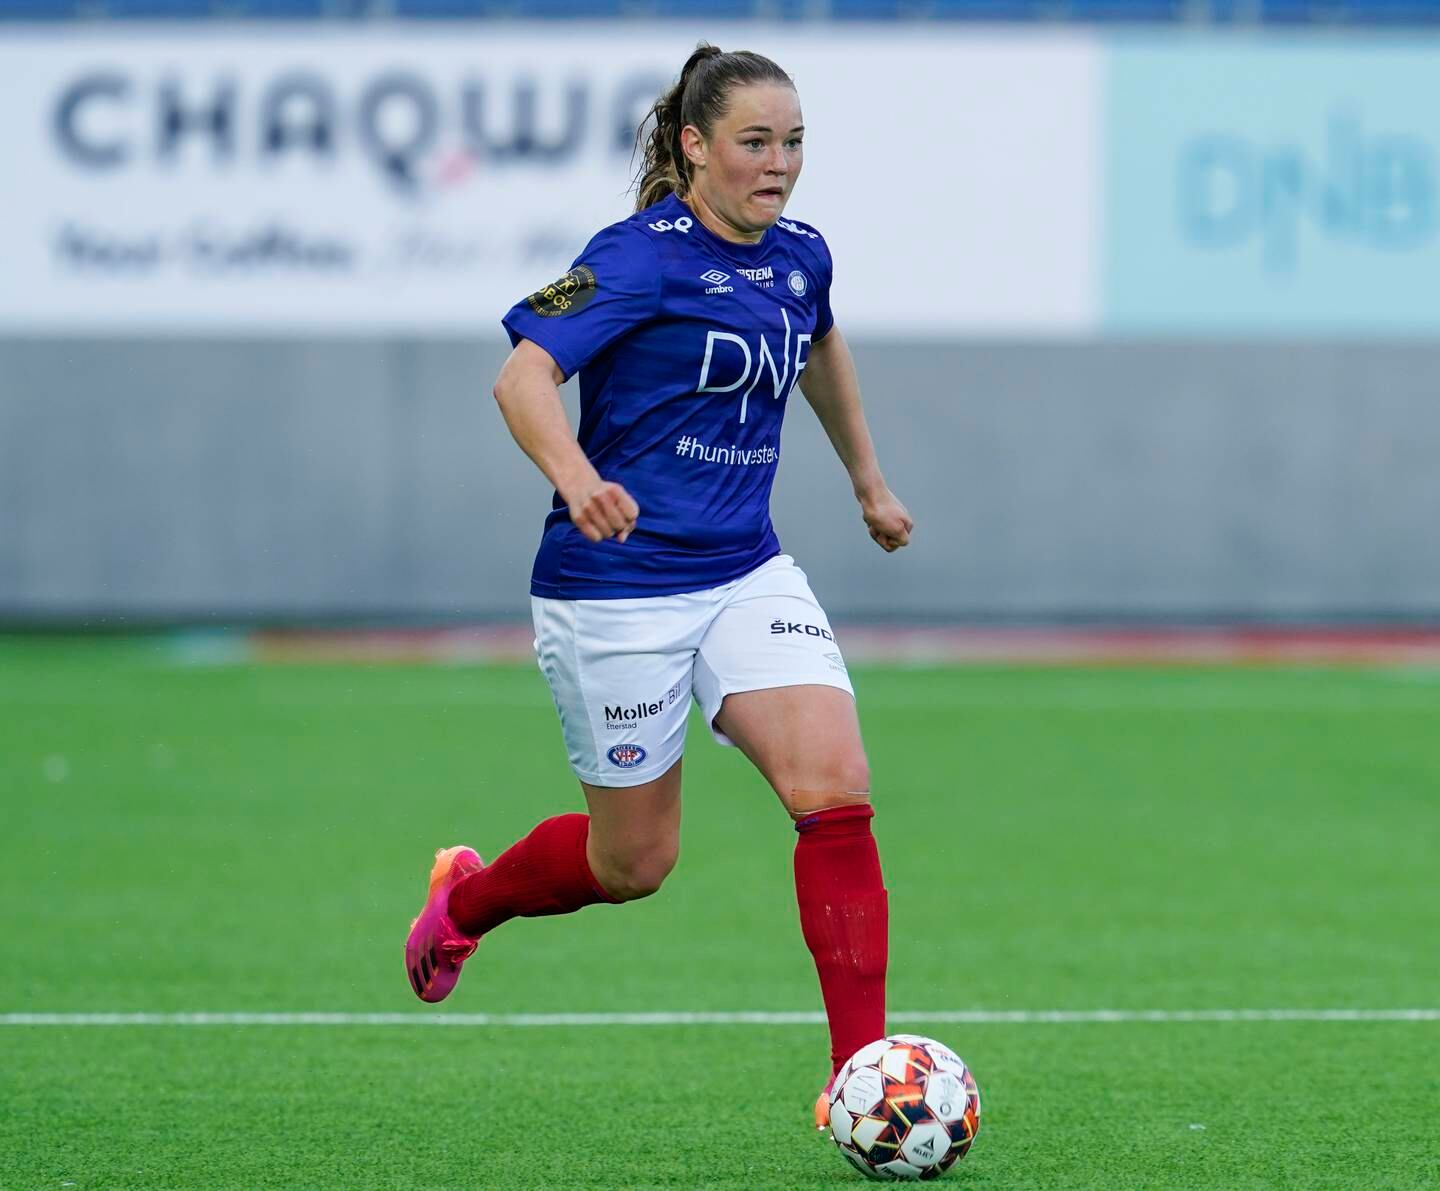 Høyreback Janni Thomsen scoret sitt første mål for sesongen da hun satte inn 2-0 direkte på frispark for VIF.
Foto: